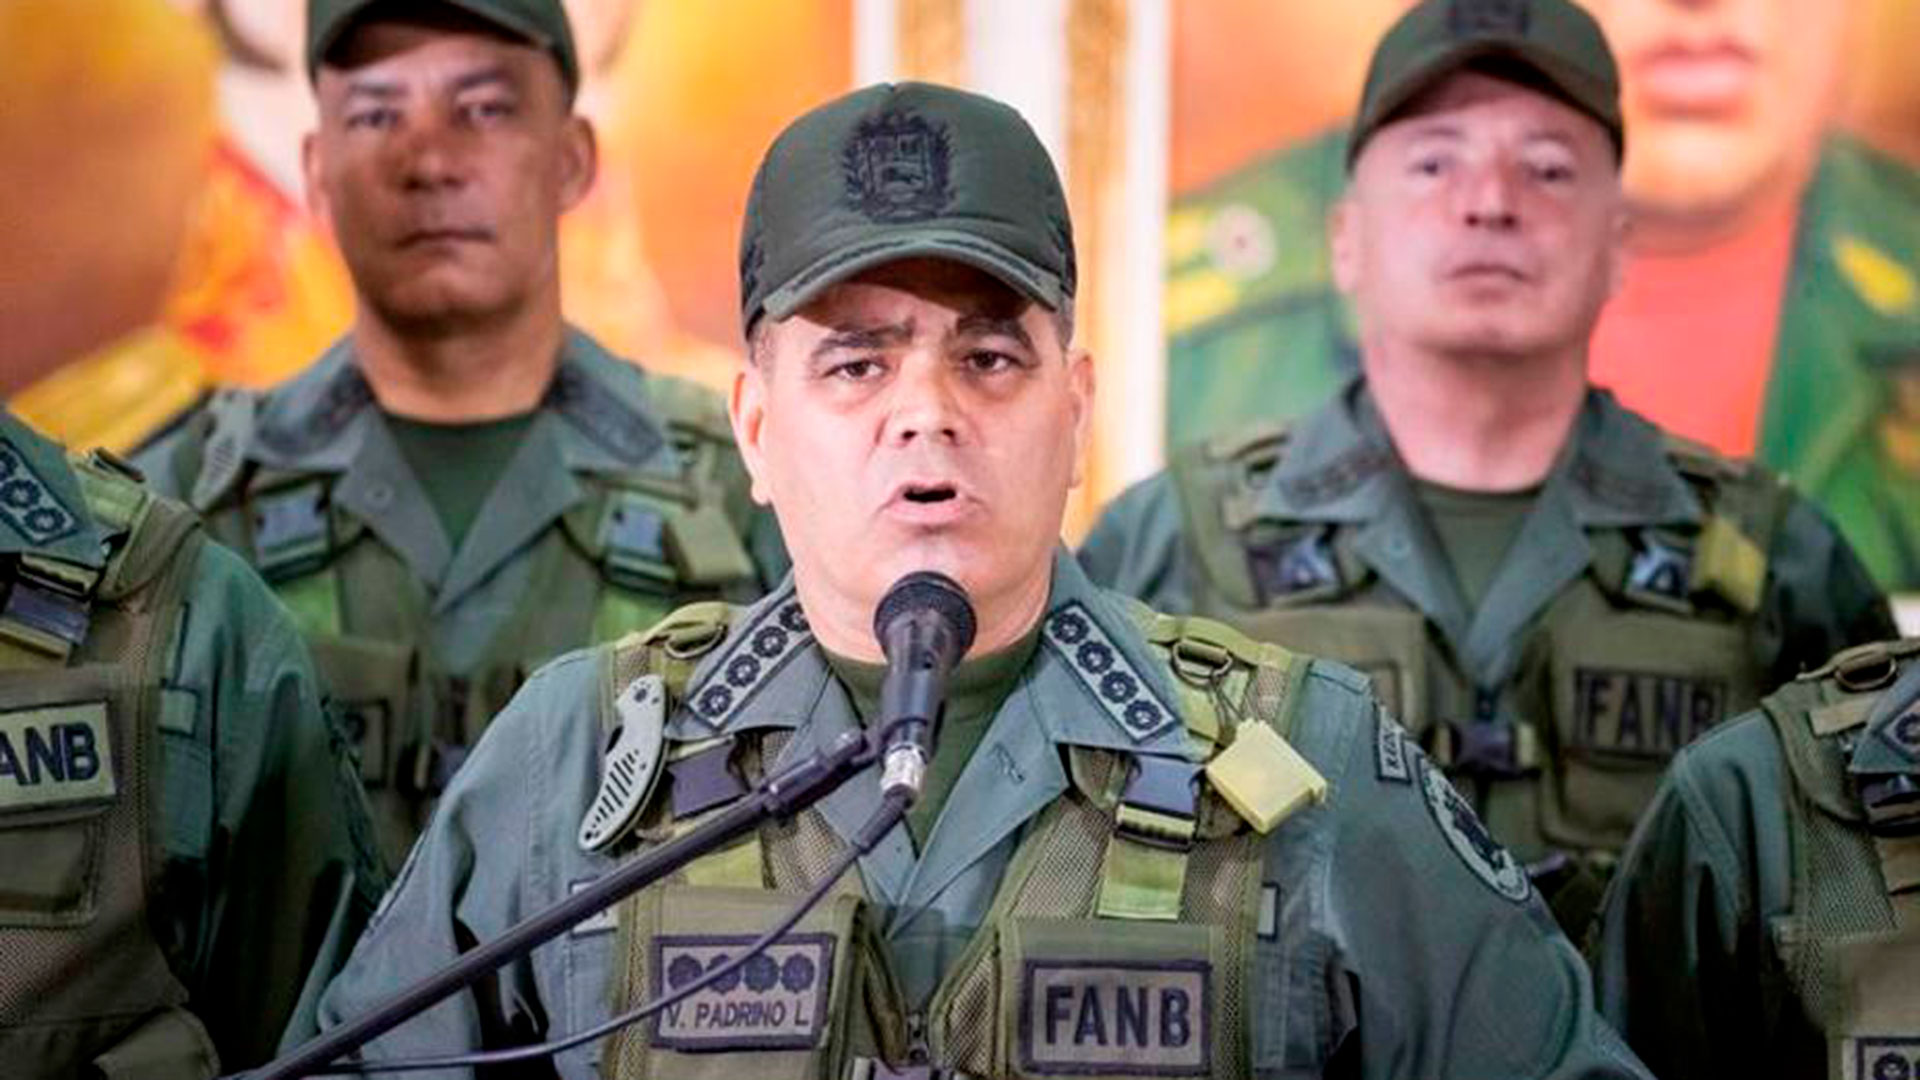 La promesa que hizo Padrino López de sacar a los guerrilleros de Venezuela no se cumple